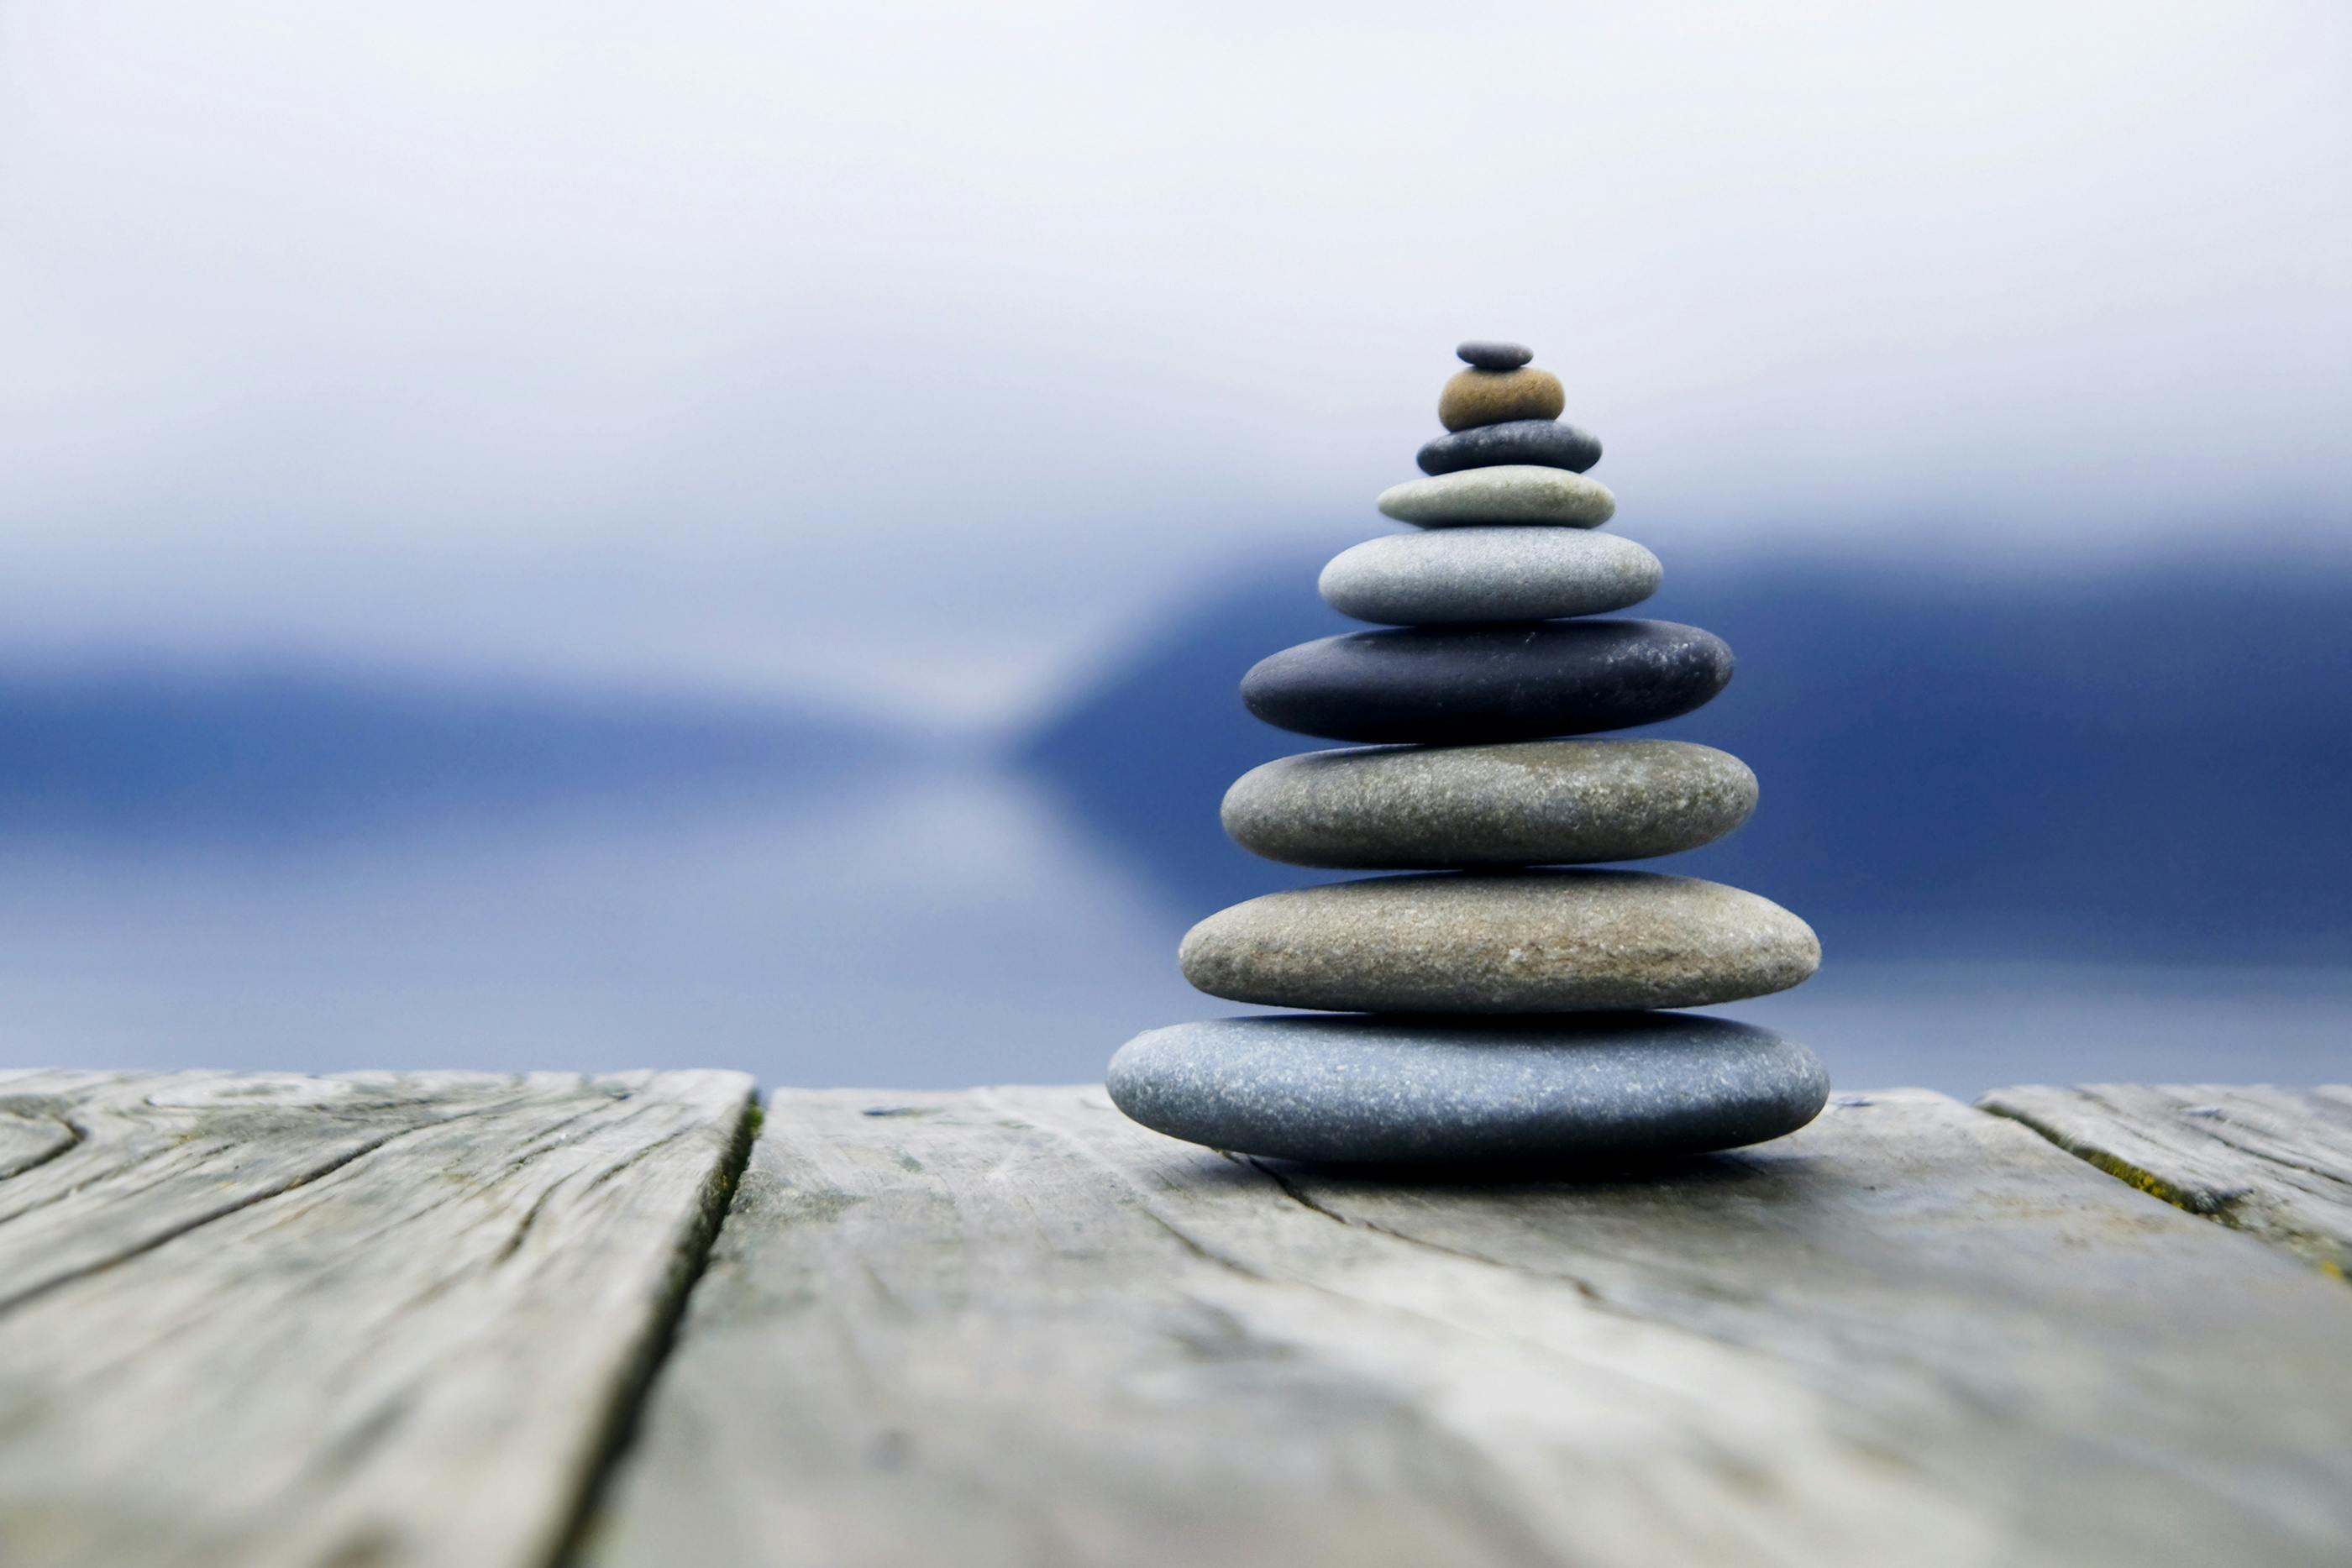 Zen balancing pebbles near a misty lake